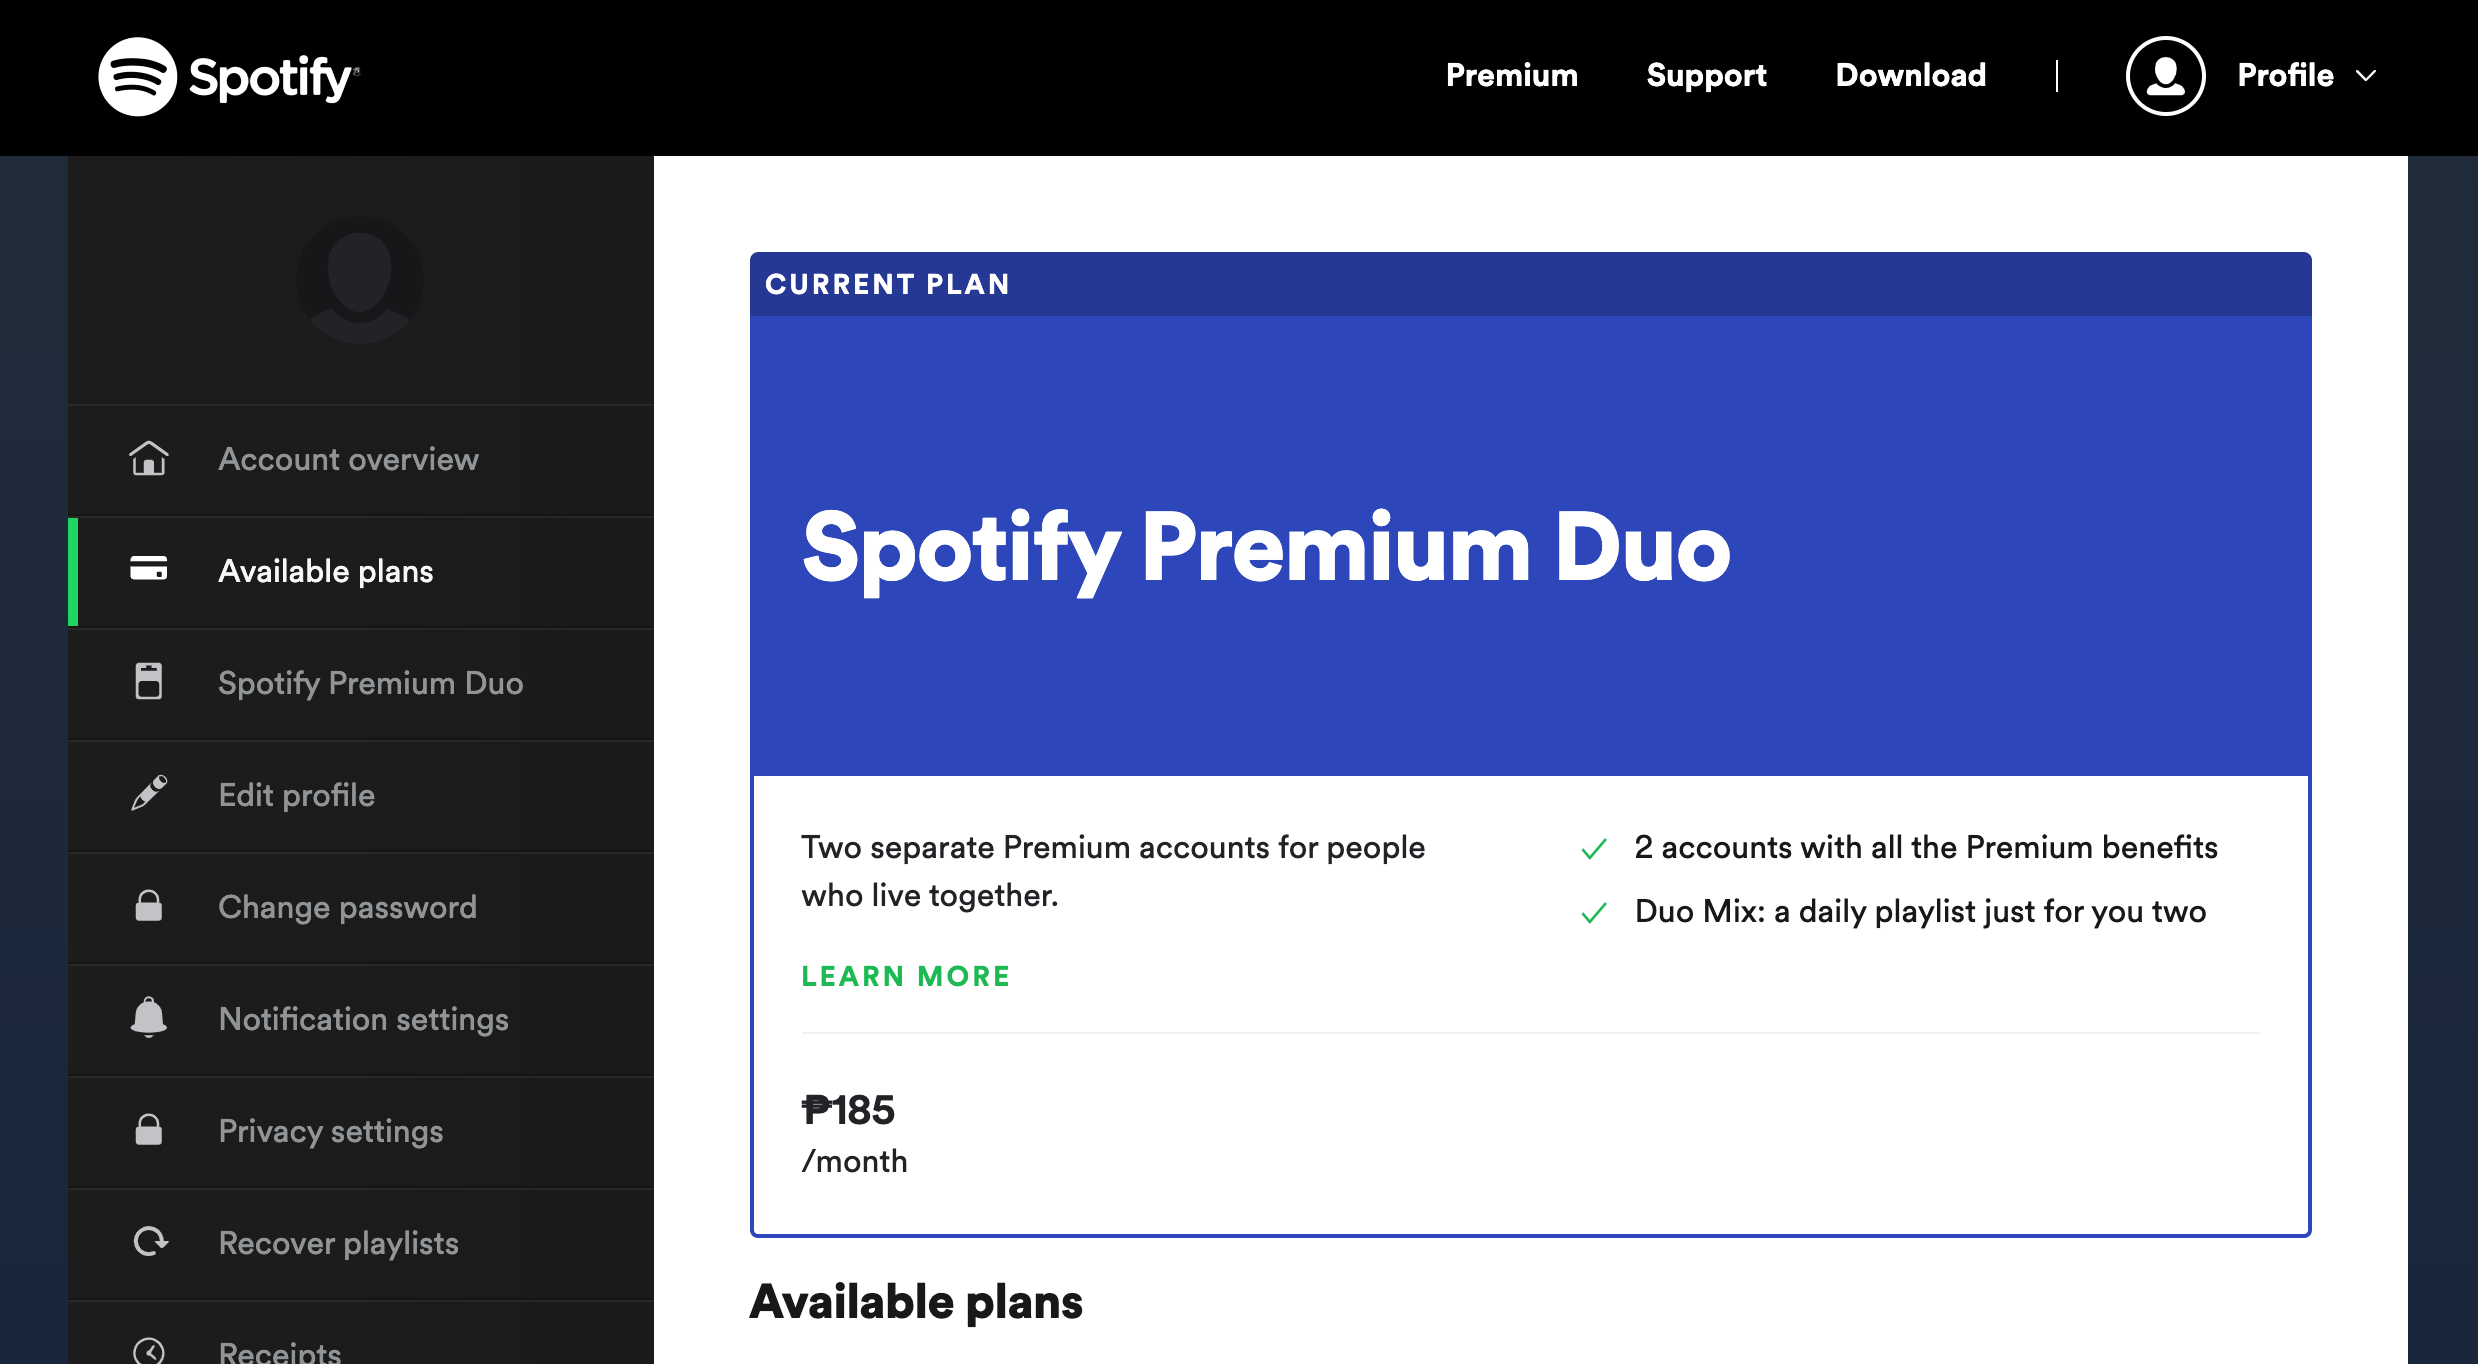 Spotify Subscription Type - Come condividere in sicurezza le password con amici e familiari